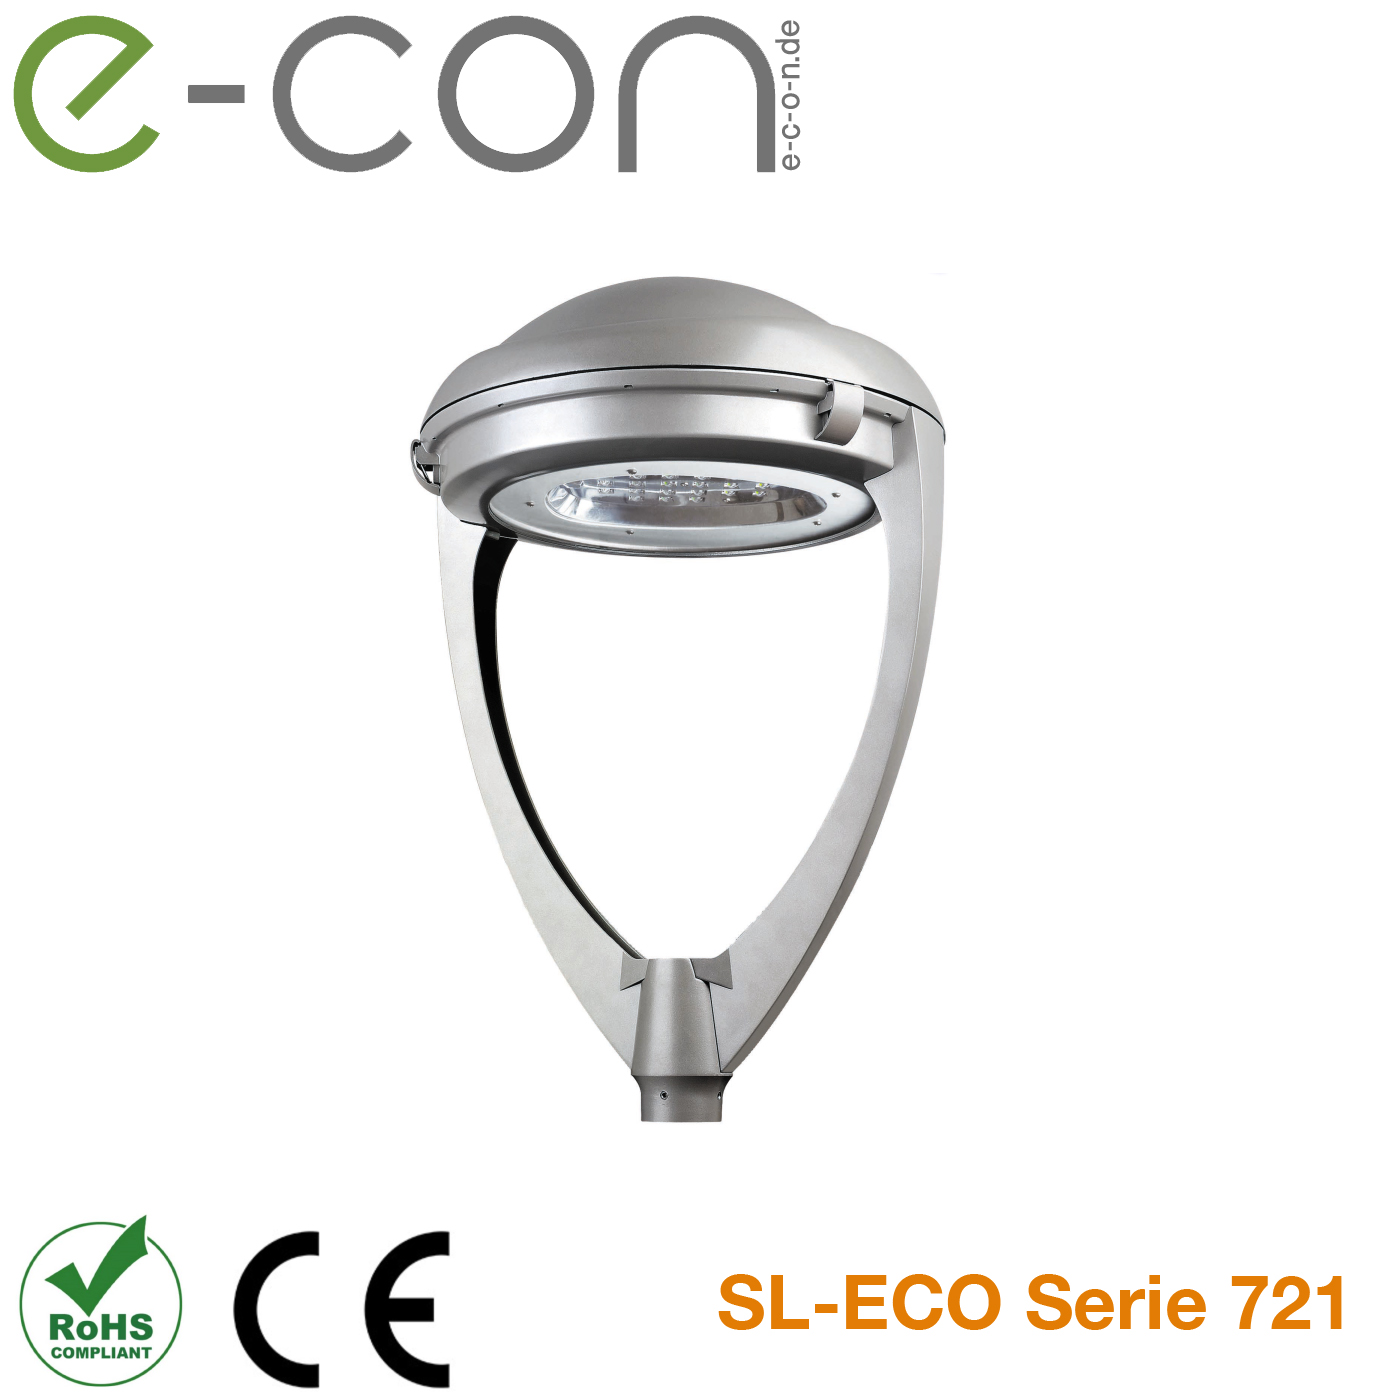 SL-ECO Serie 721